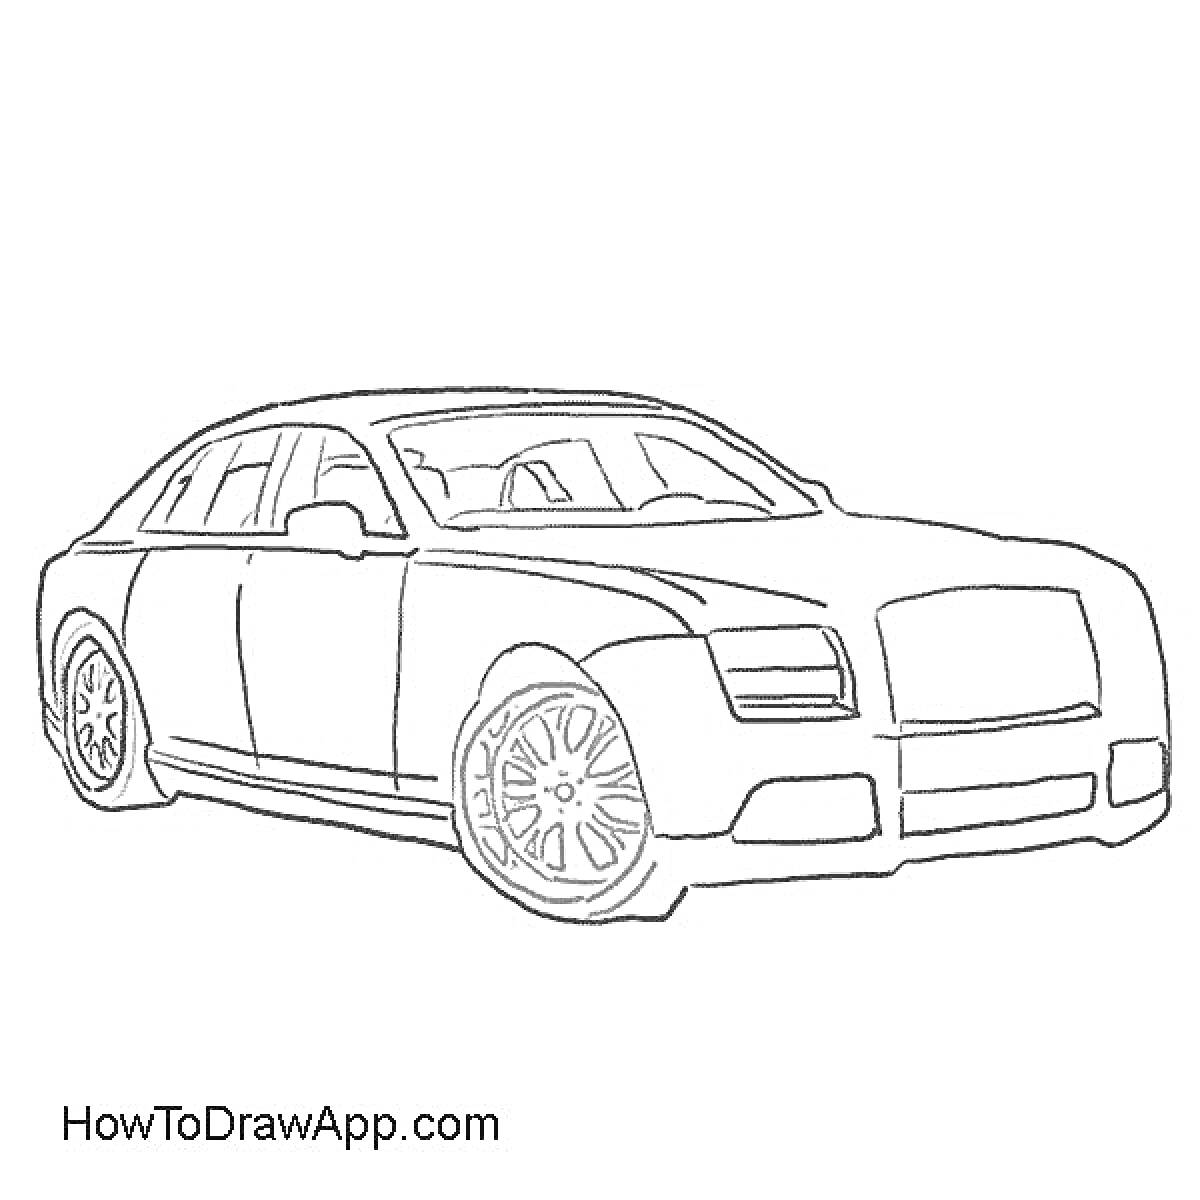 Контур автомобиля Rolls-Royce с выделенными передними и задними колесами